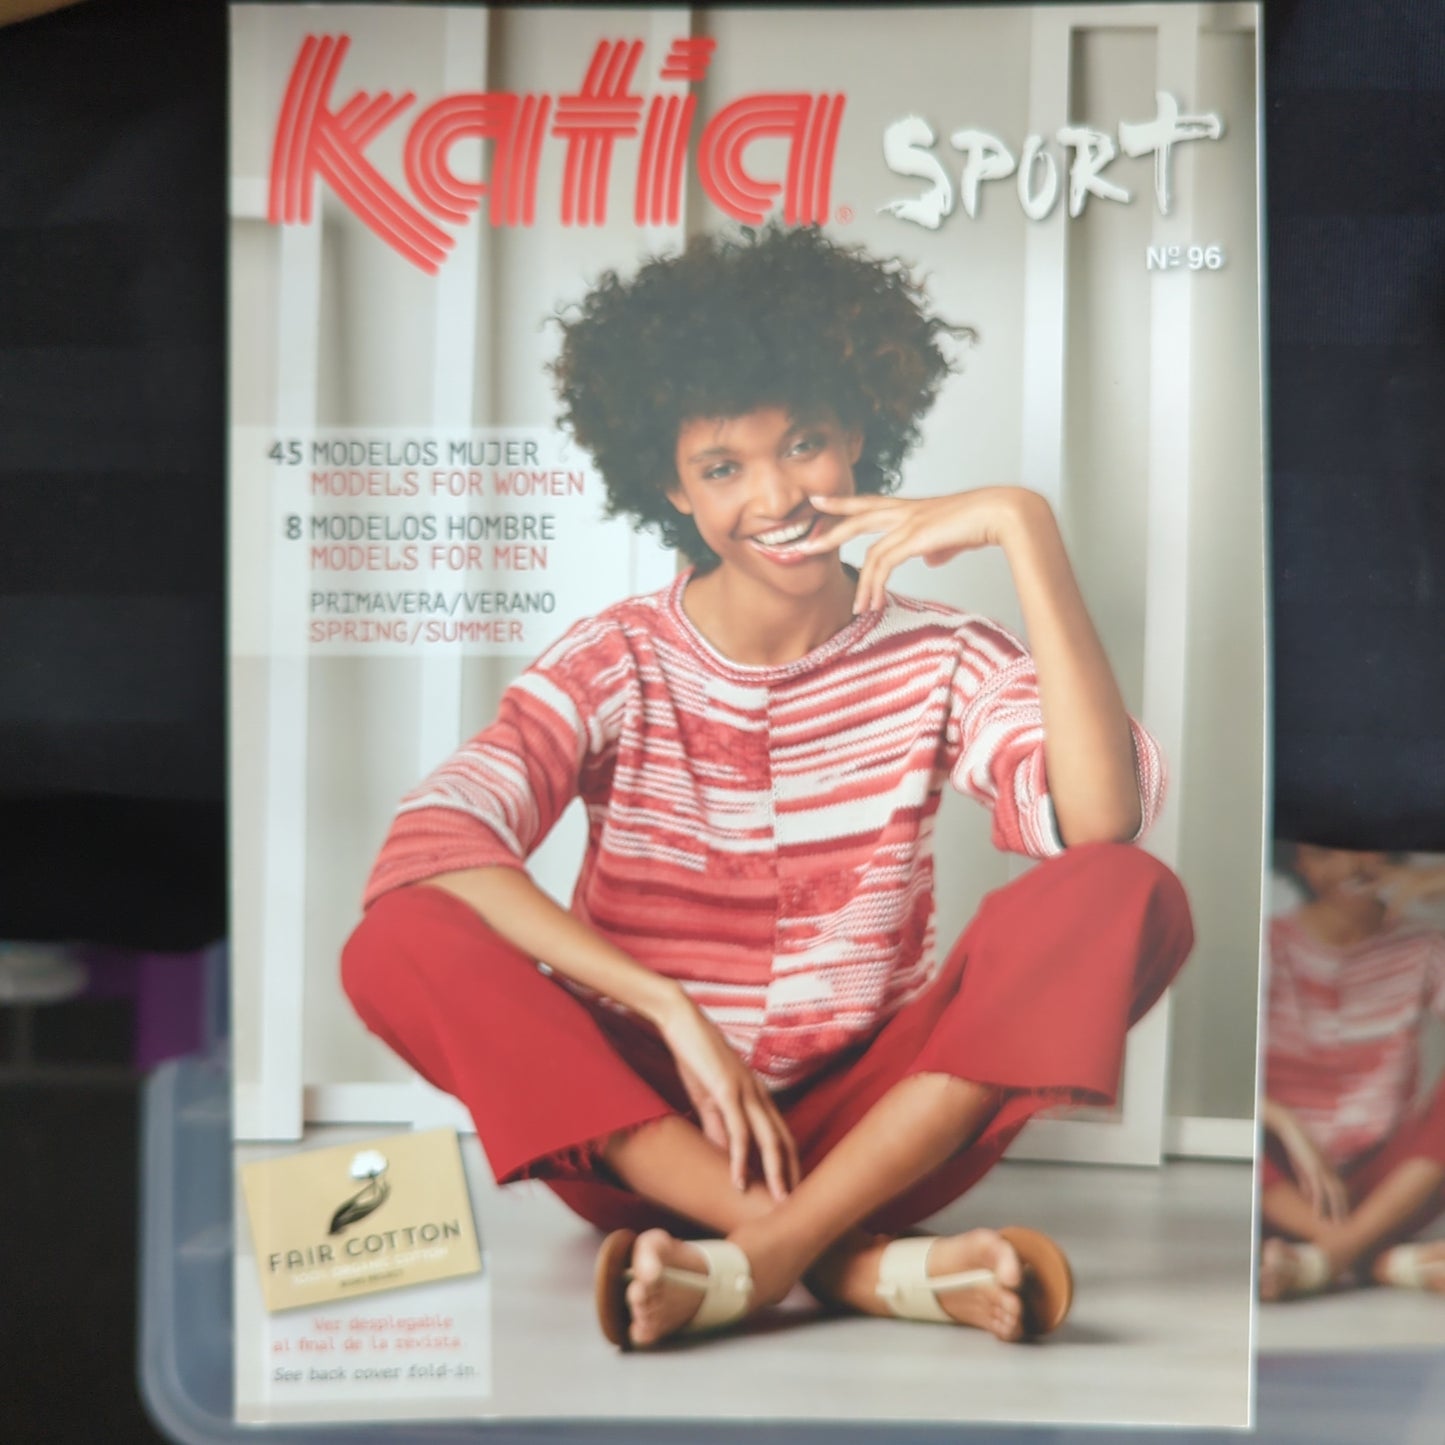 Katia n°96 Sport